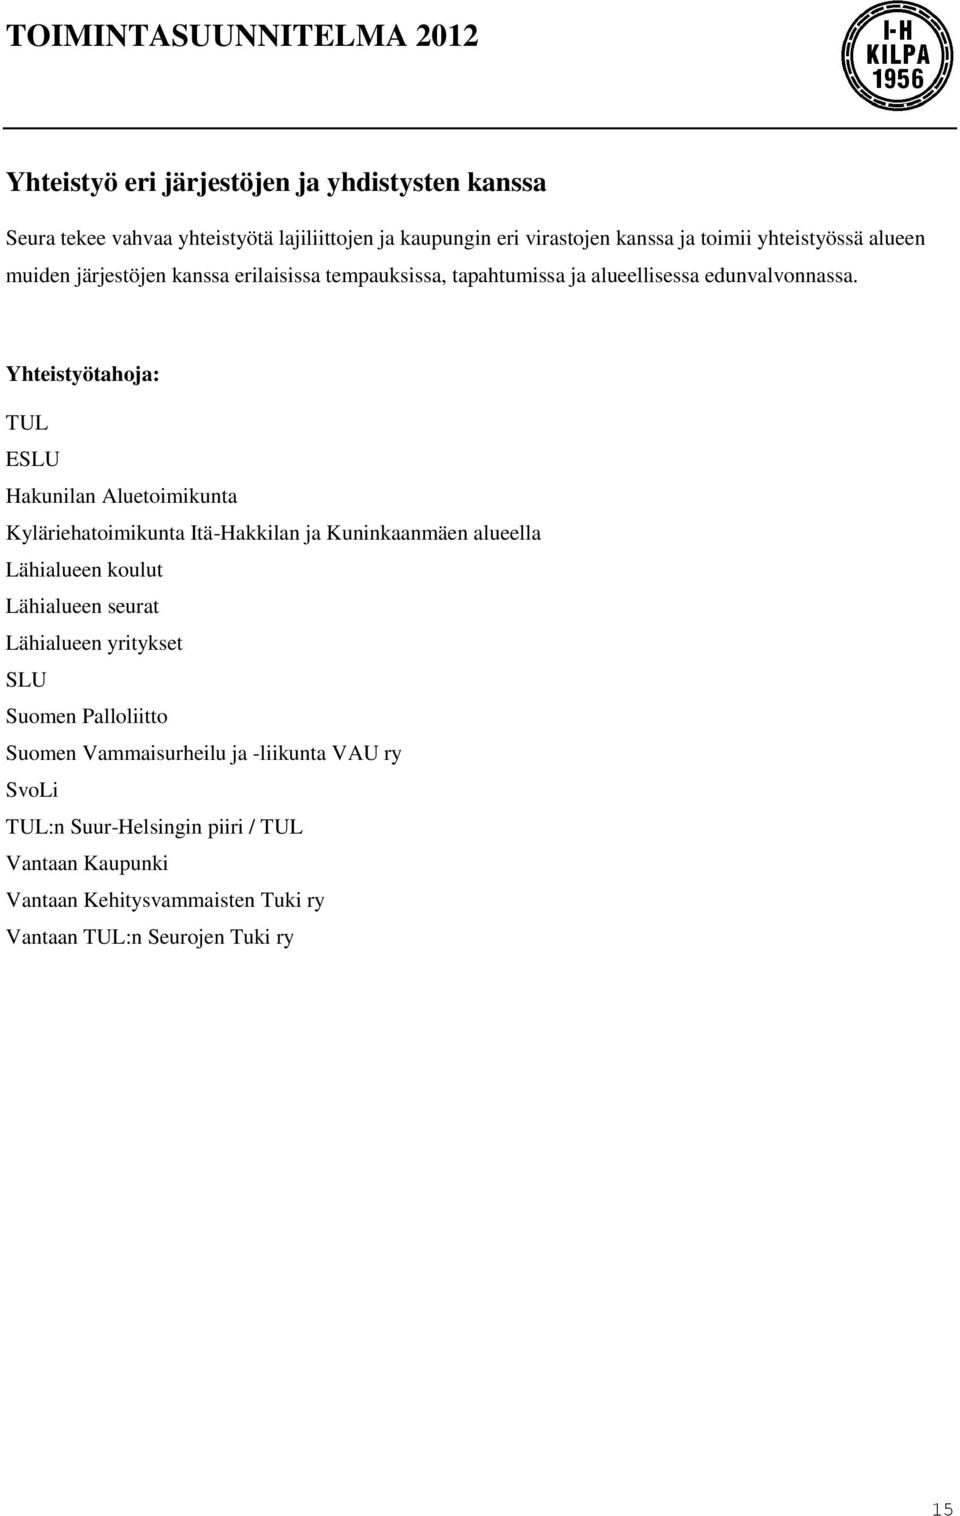 Yhteistyötahoja: TUL ESLU Hakunilan Aluetoimikunta Kyläriehatoimikunta Itä-Hakkilan ja Kuninkaanmäen alueella Lähialueen koulut Lähialueen seurat